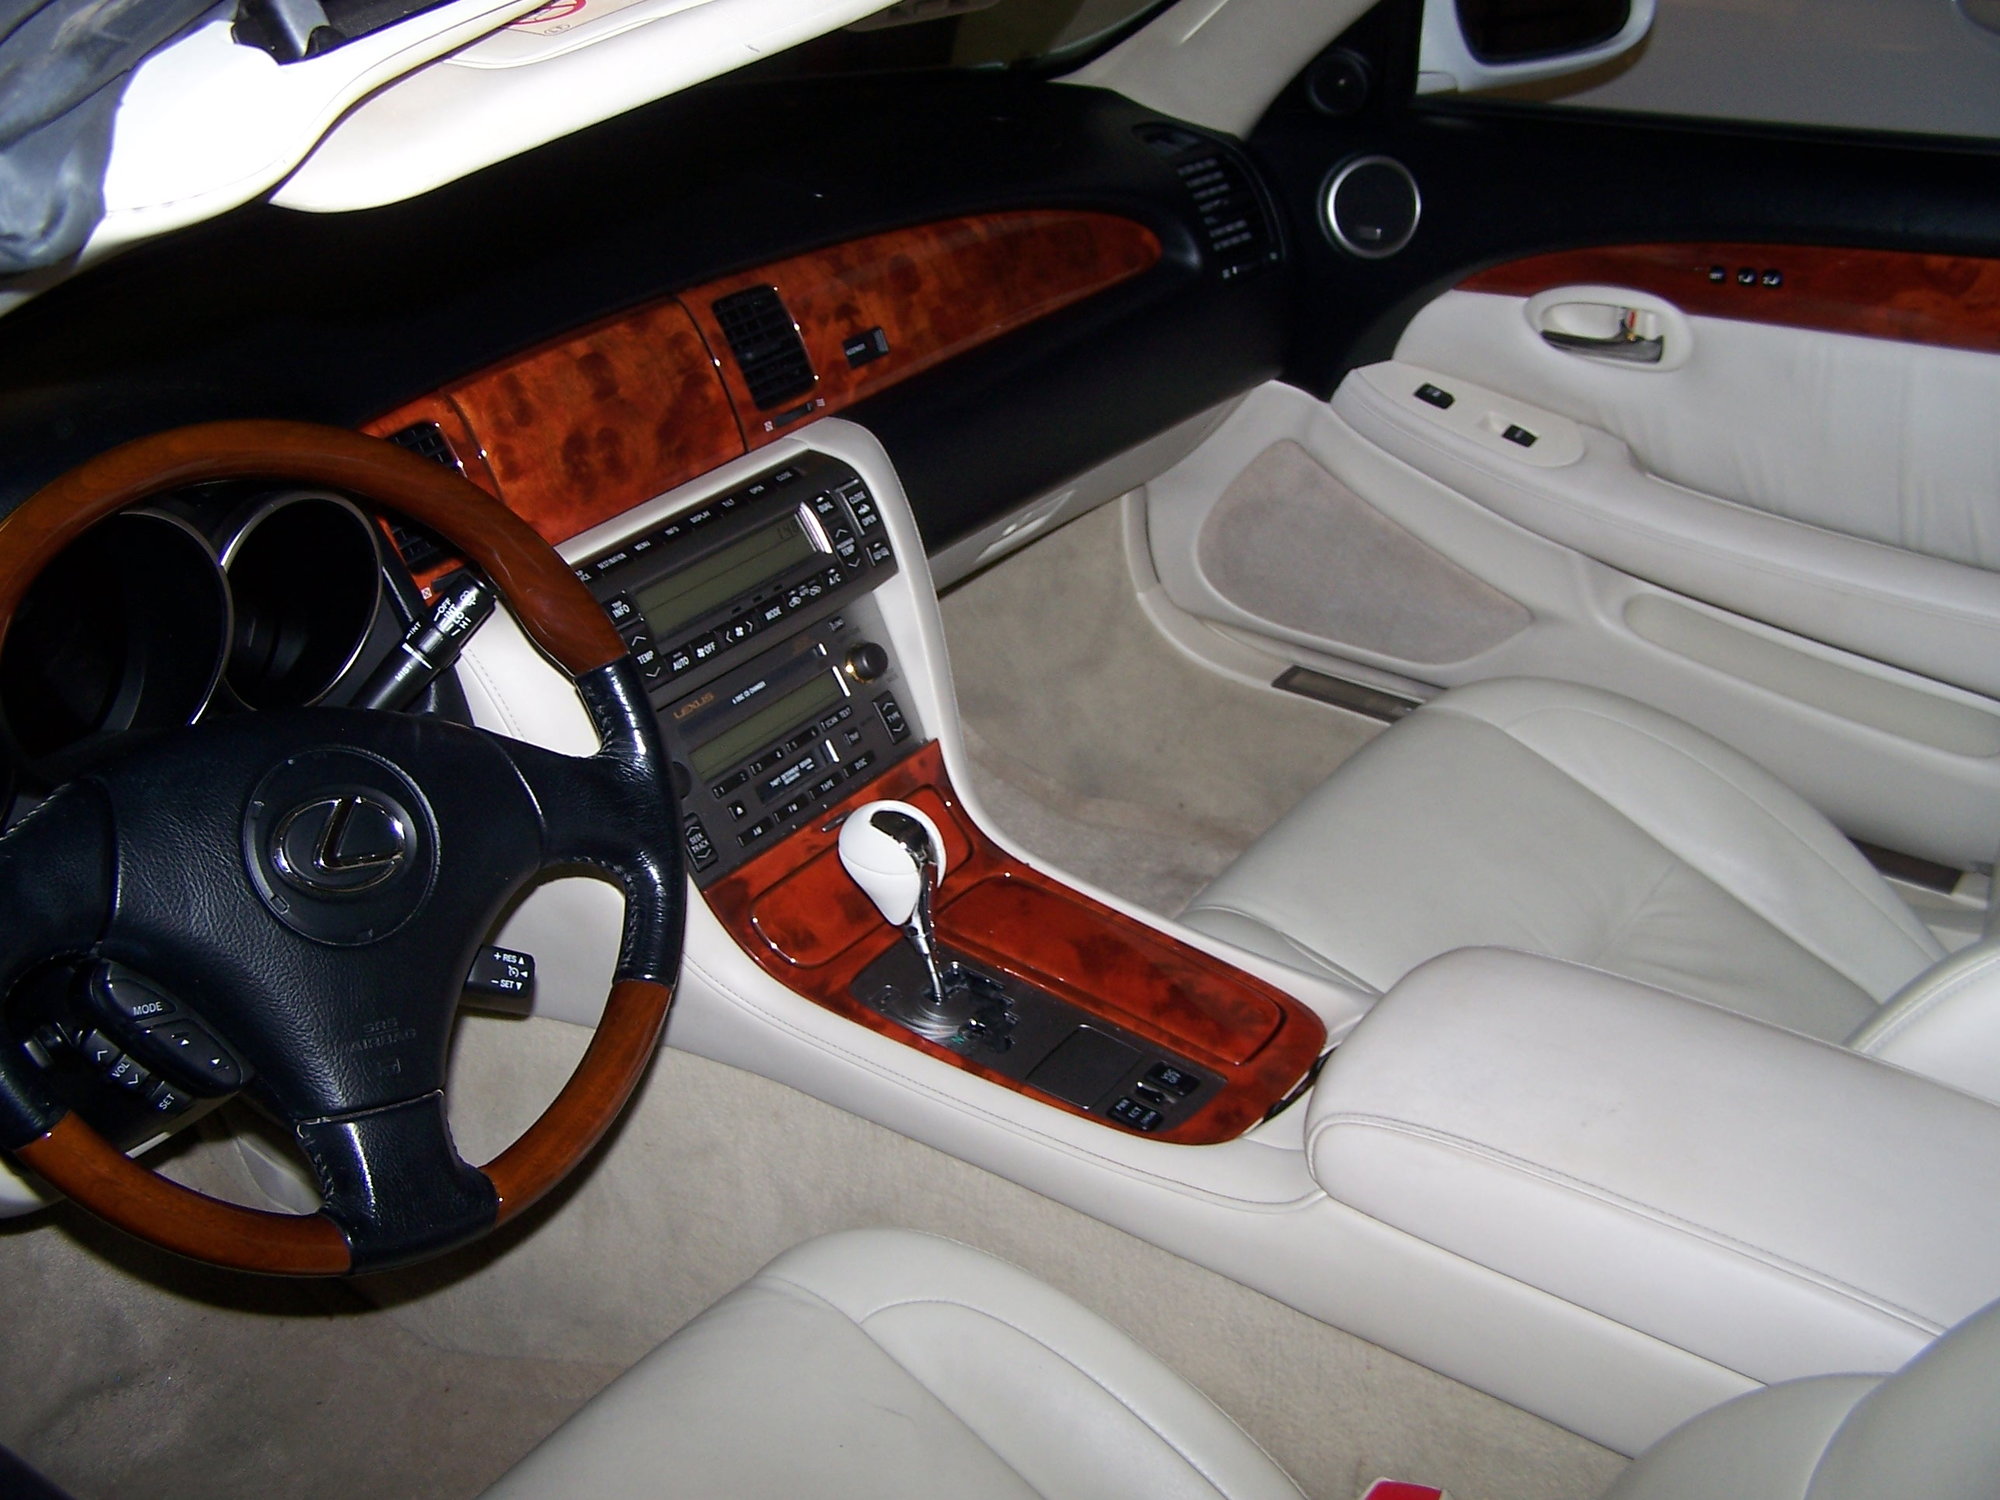 2004 Sc430 Interior Leather Color Clublexus Lexus Forum Discussion